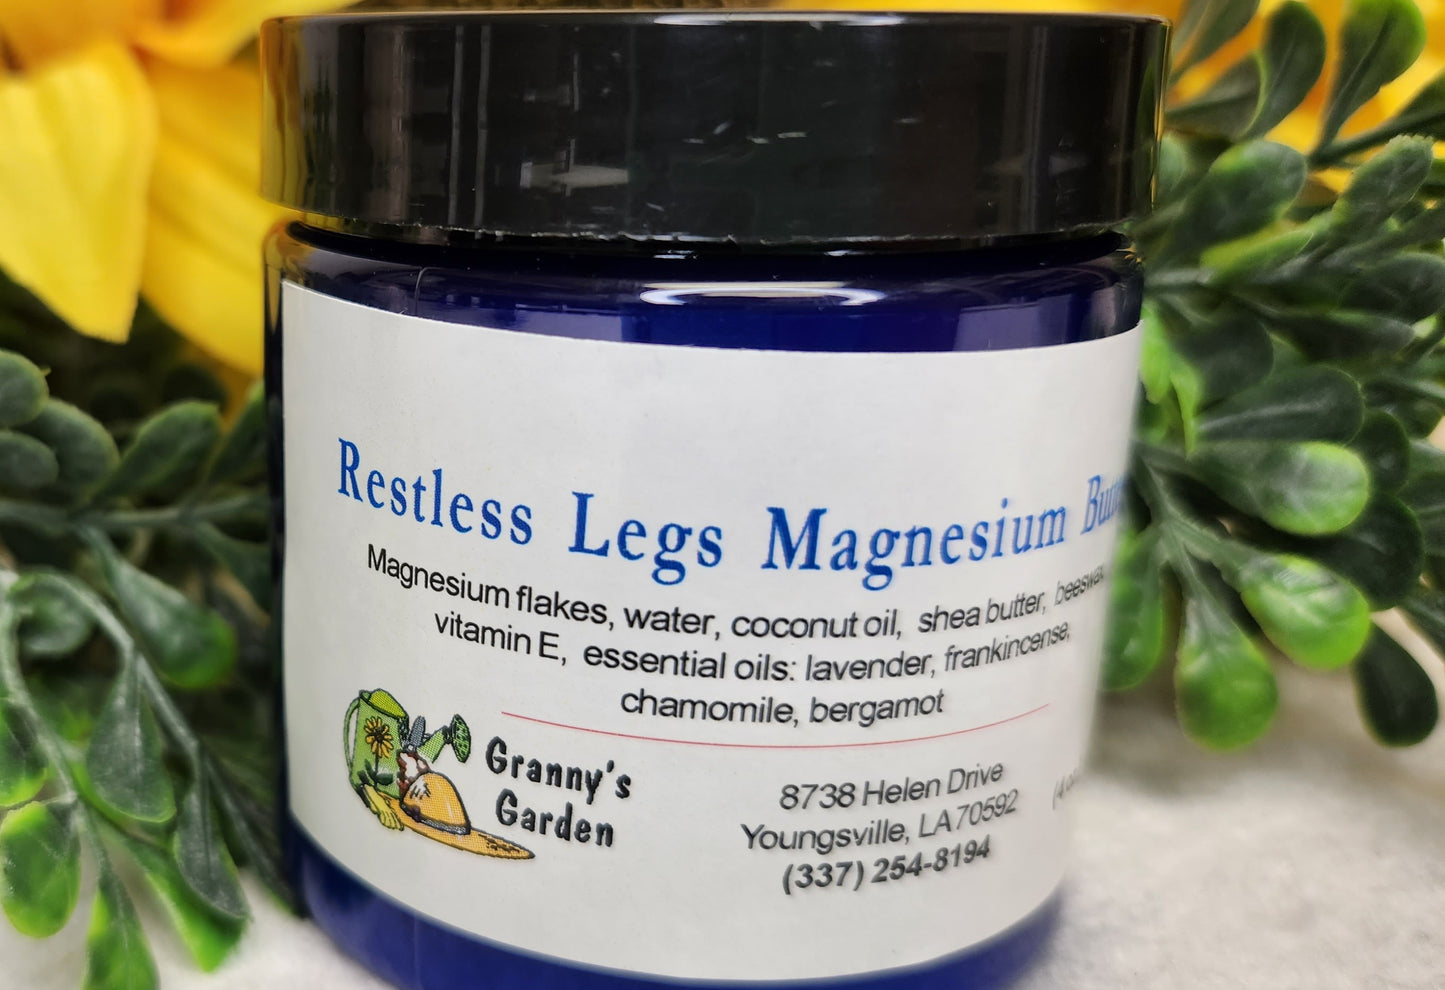 Restless Legs Magnesium Butter